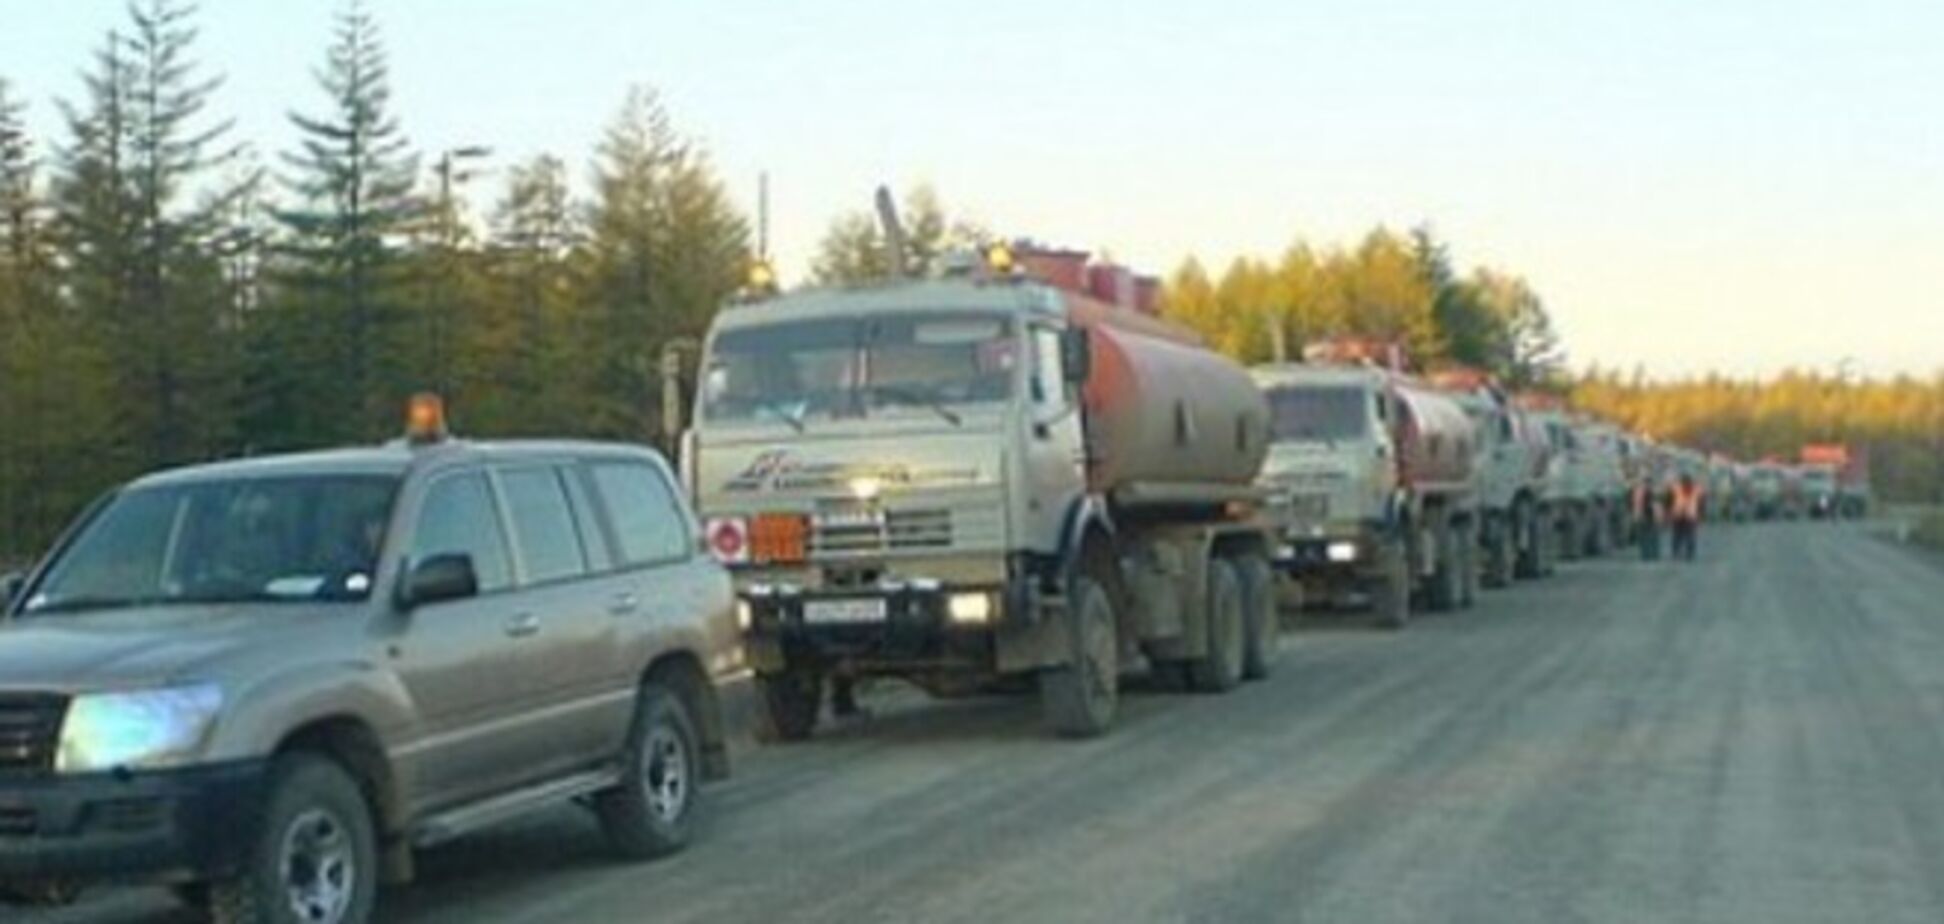 16 бензовозов прибыло в Украину в составе российского 'гумконвоя' - ОБСЕ